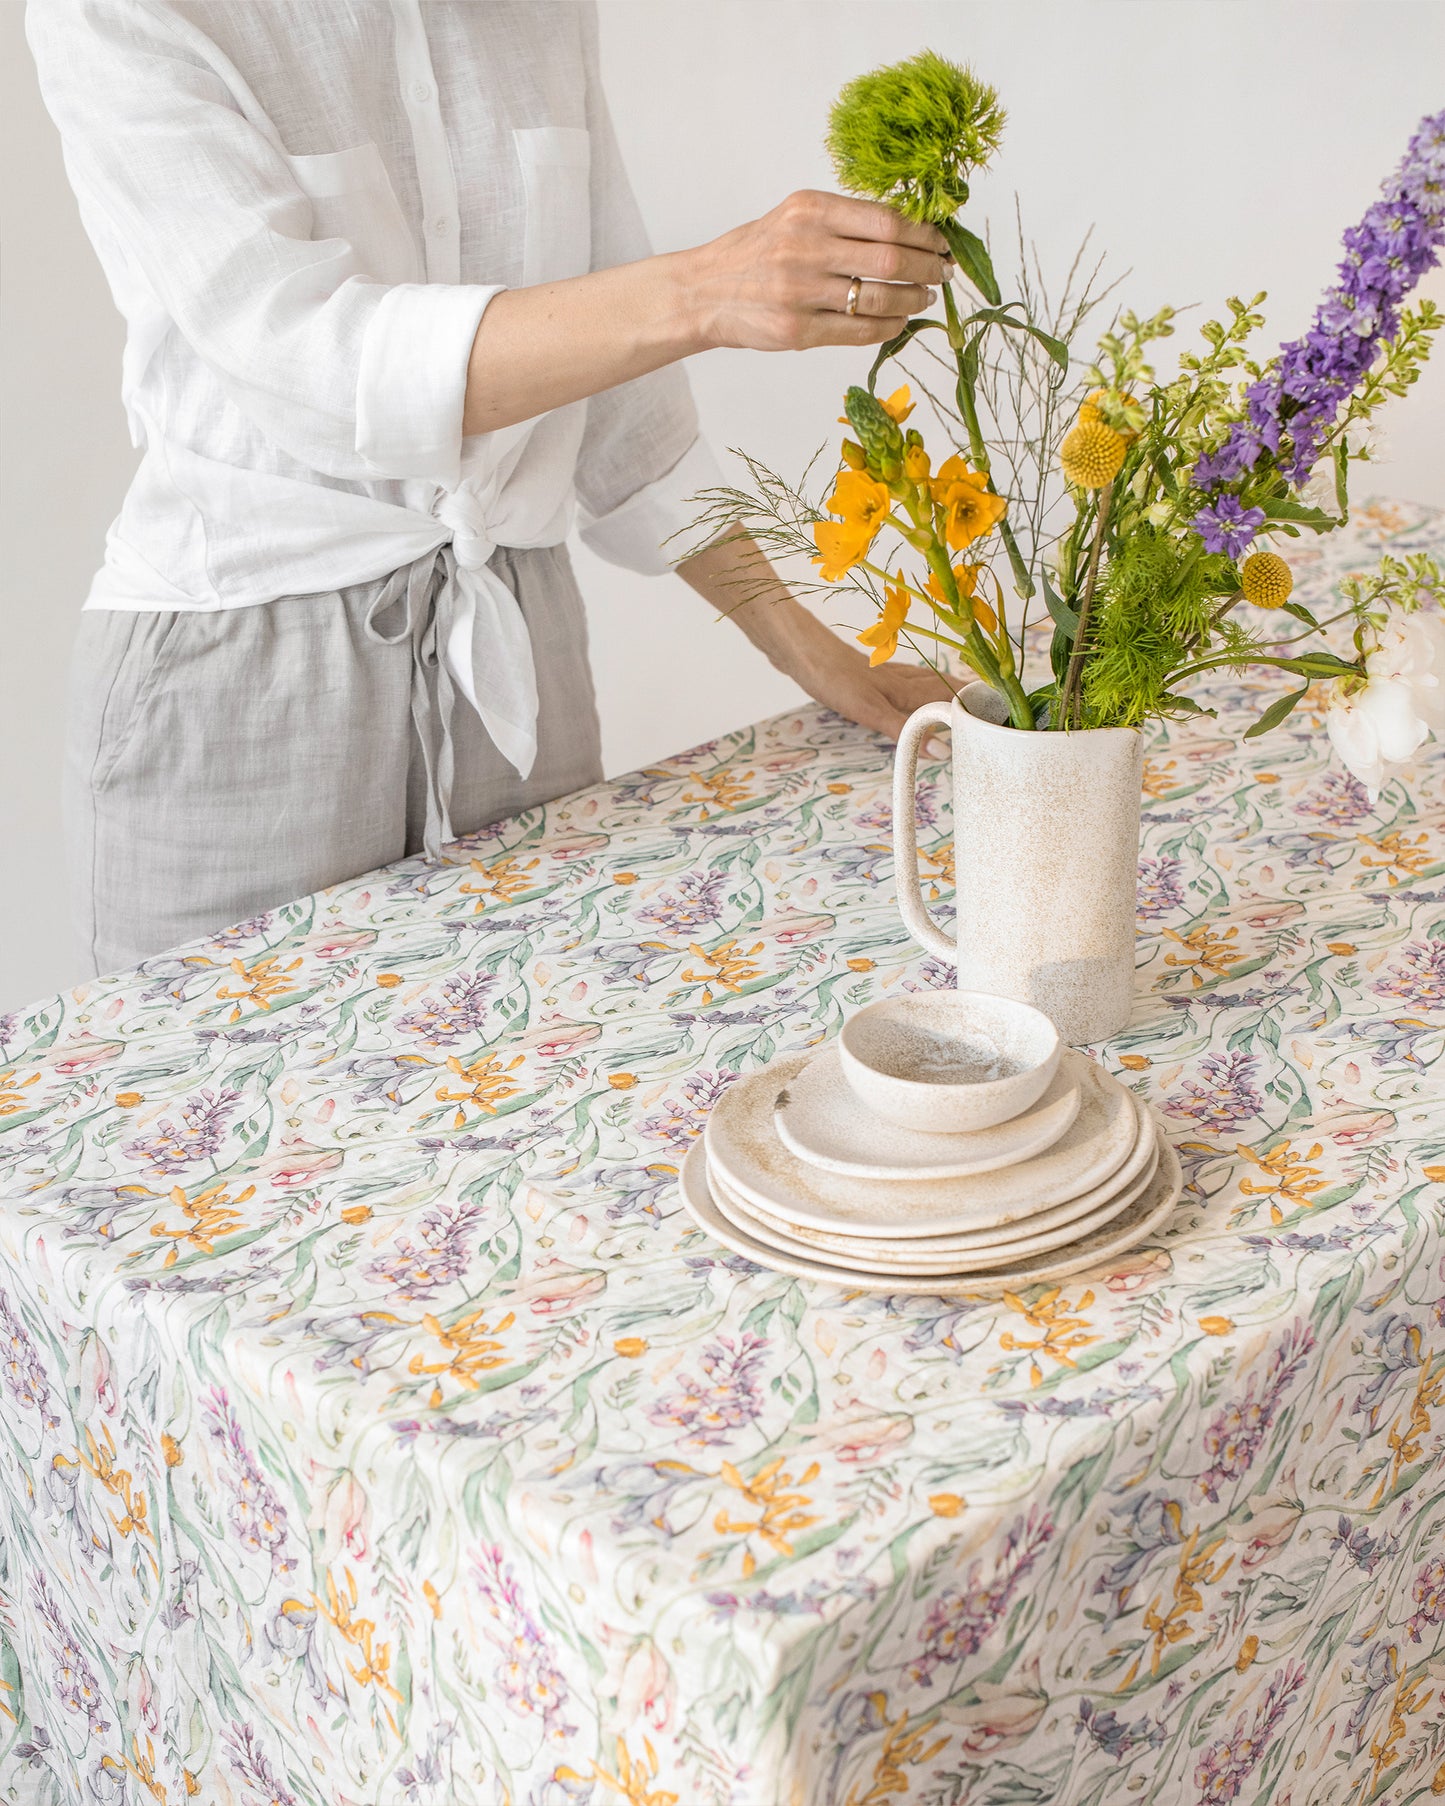 Blossom print linen tablecloth - MagicLinen